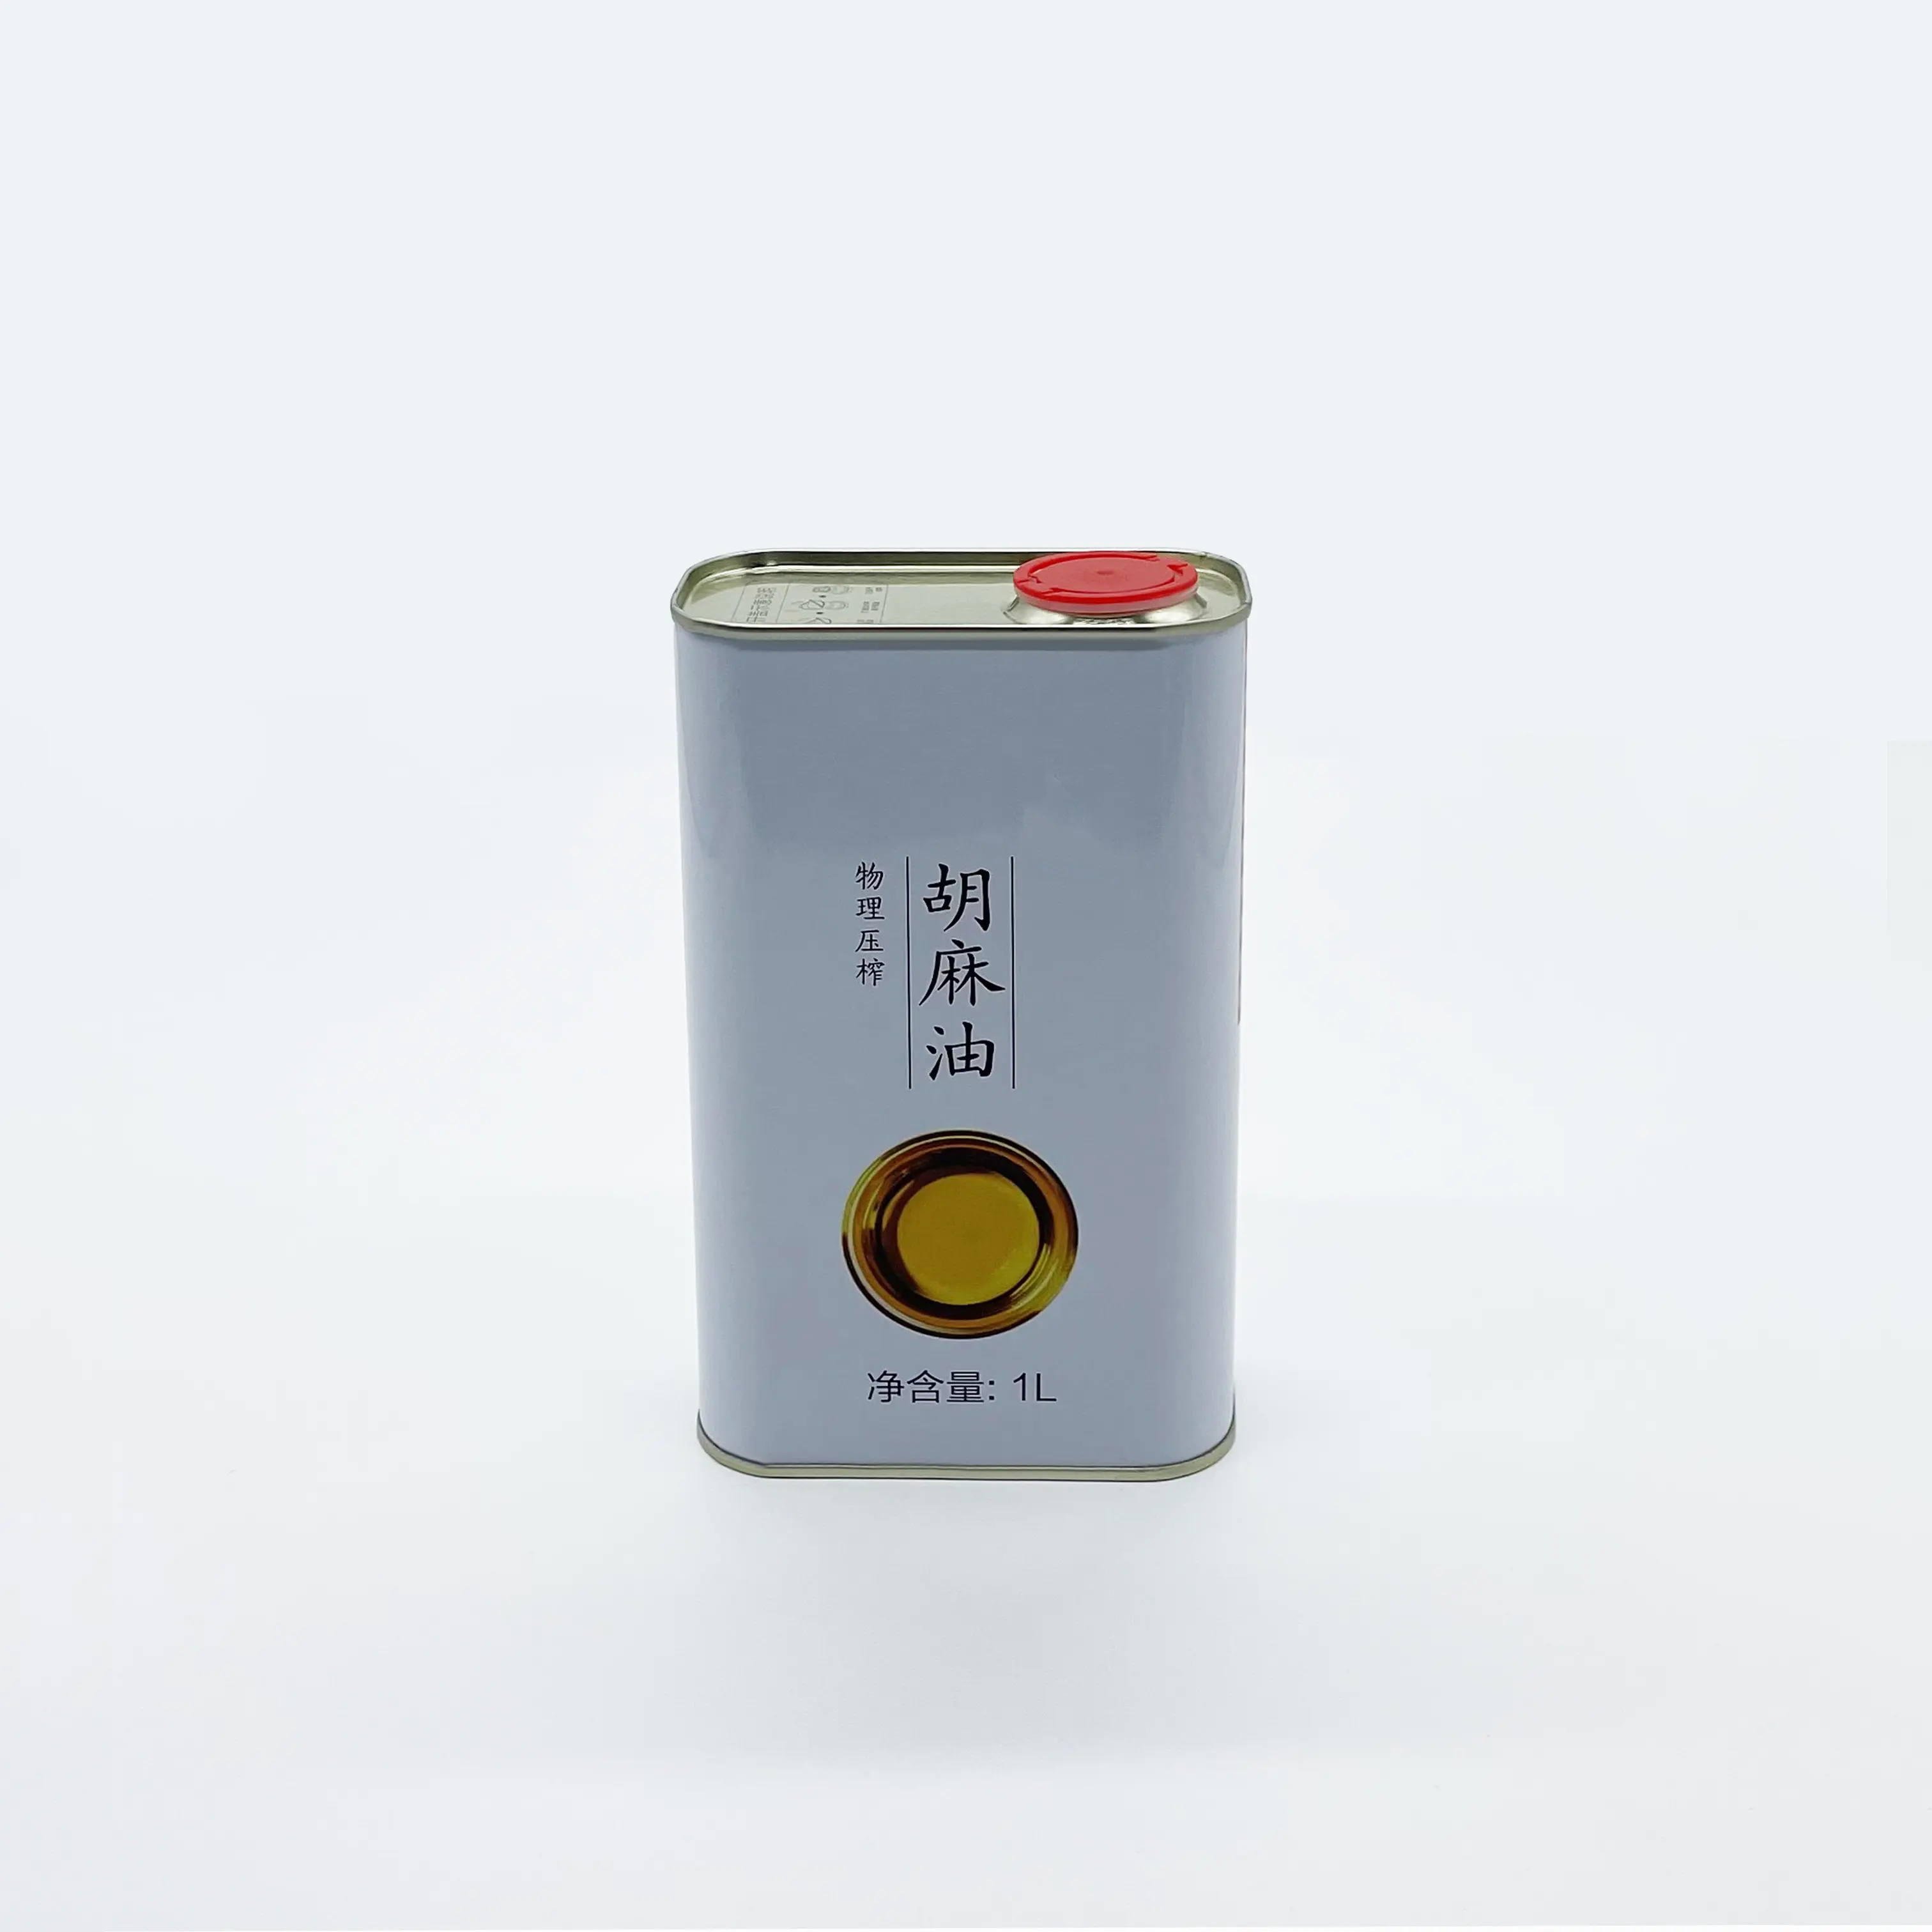 Lata de lata de metal de qualidade alimentar para folha de flandres quadrada de 1 litro de óleo comestível de azeite